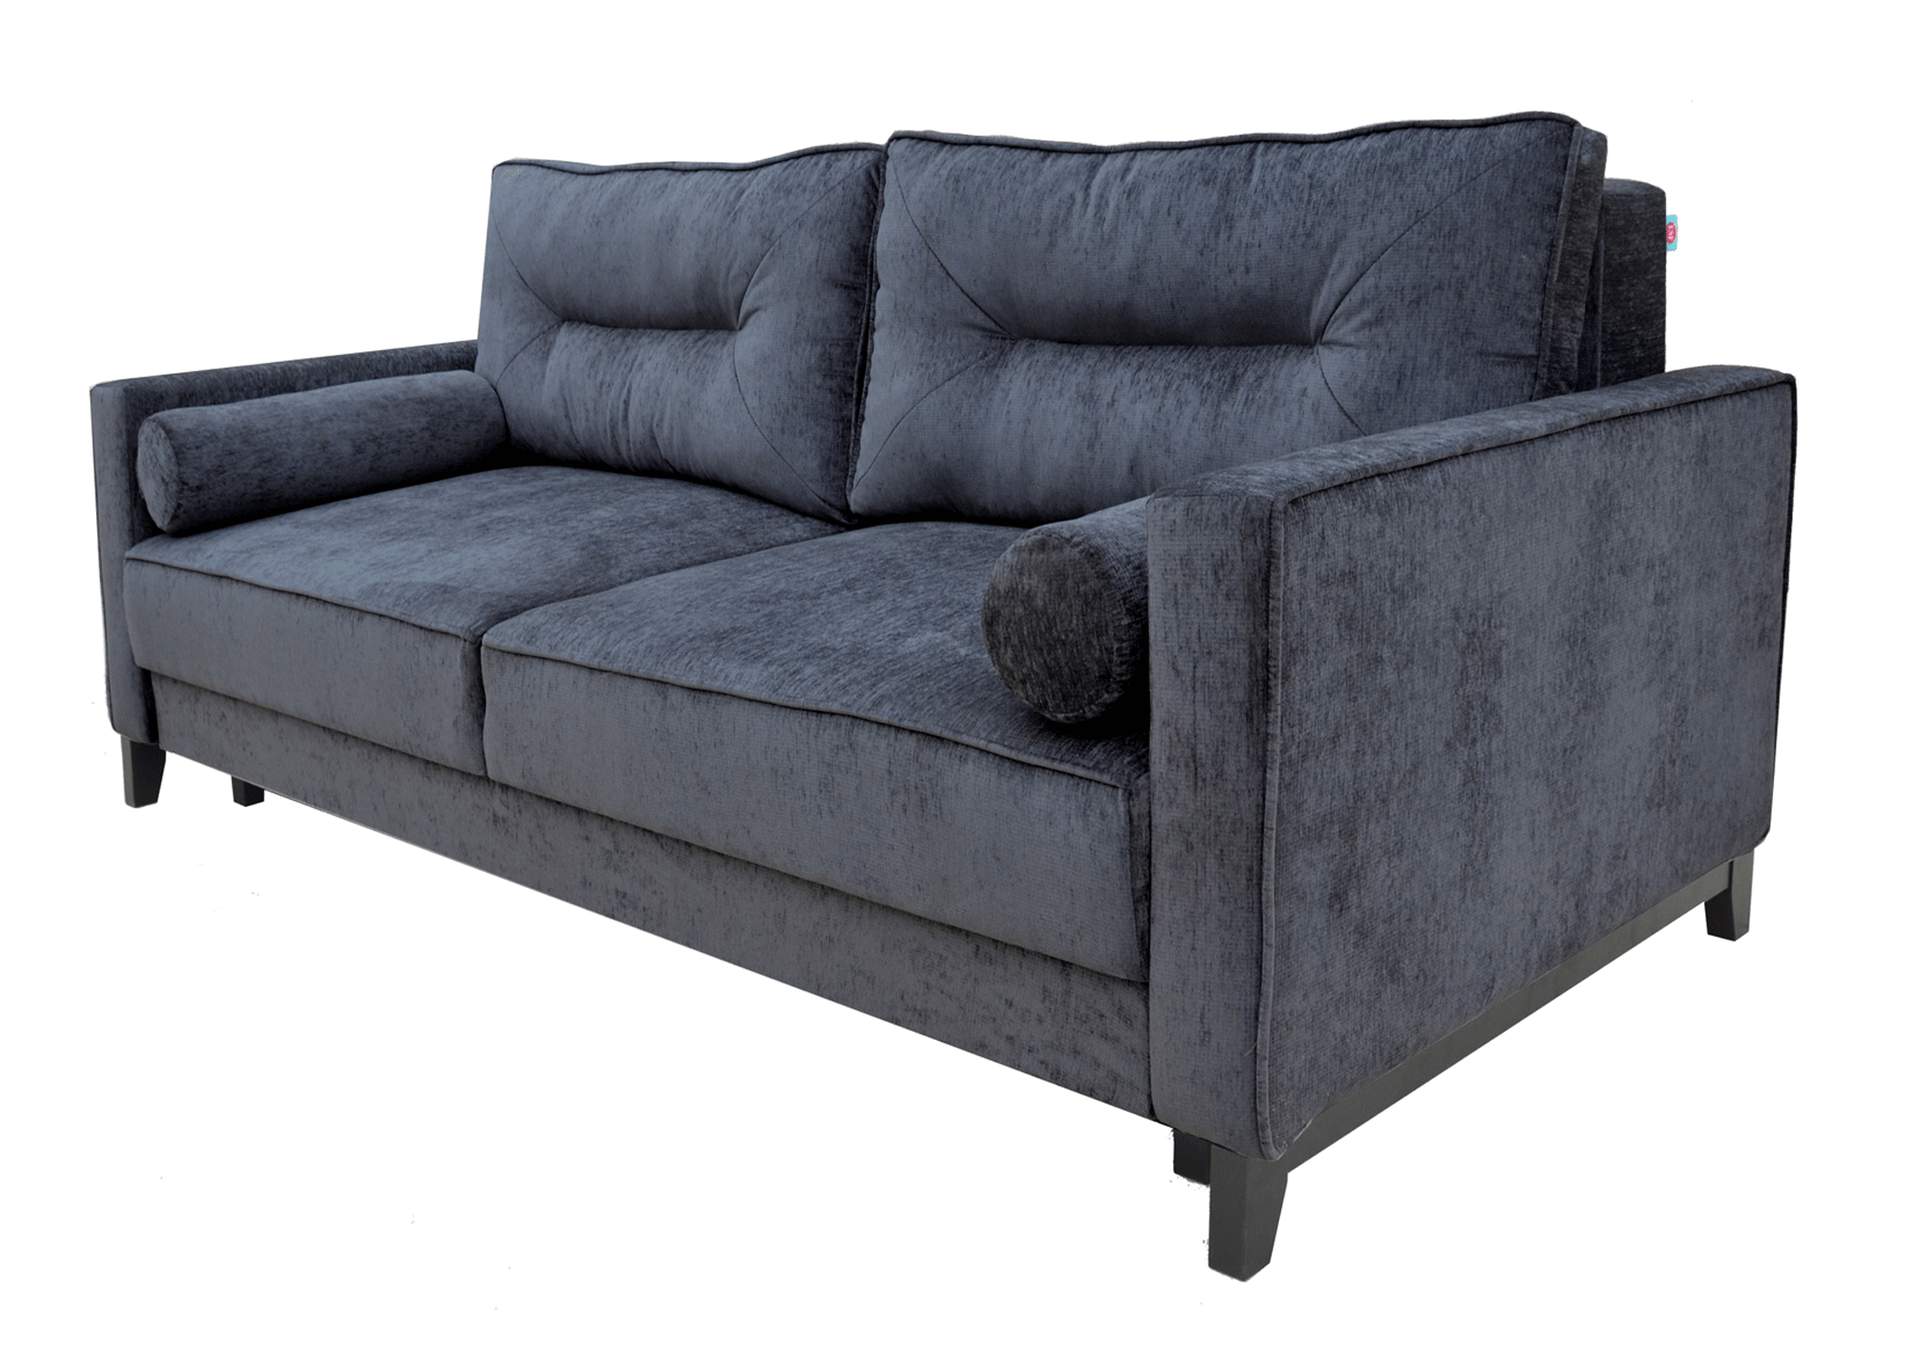 Pesaro Sofa Bed,ESF Wholesale Furniture